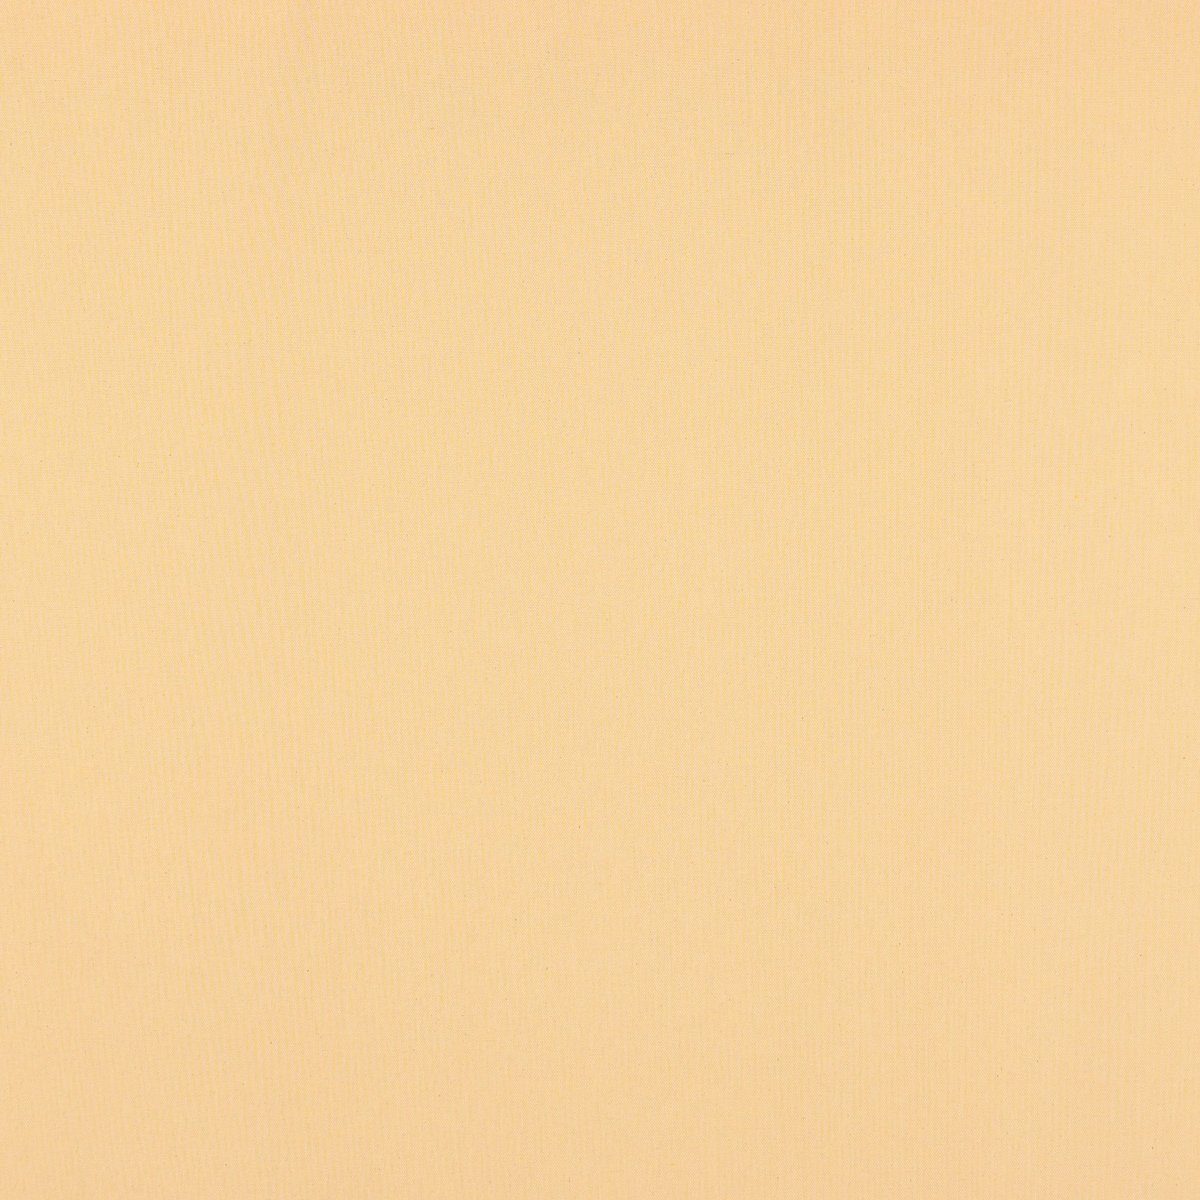 handmade Tischläufer Tischläufer LEBEN. Leinenlook SCHÖNER SCHÖNER uni 40x160cm, LEBEN. pastell gelb